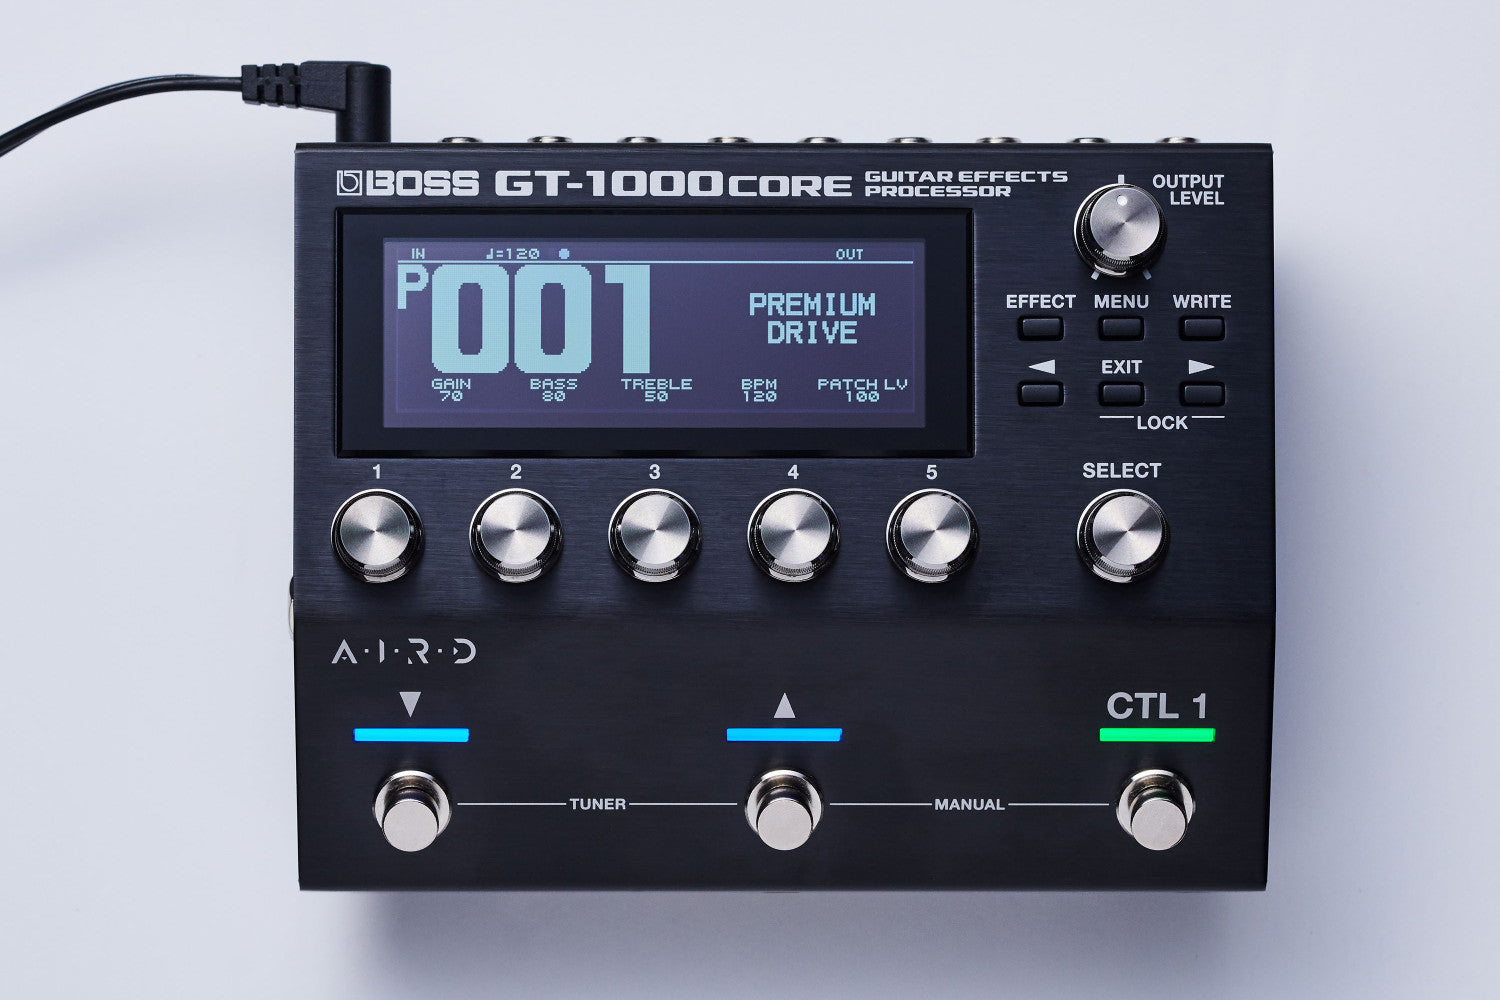 Boss GT-1000CORE Multi Effects Processor